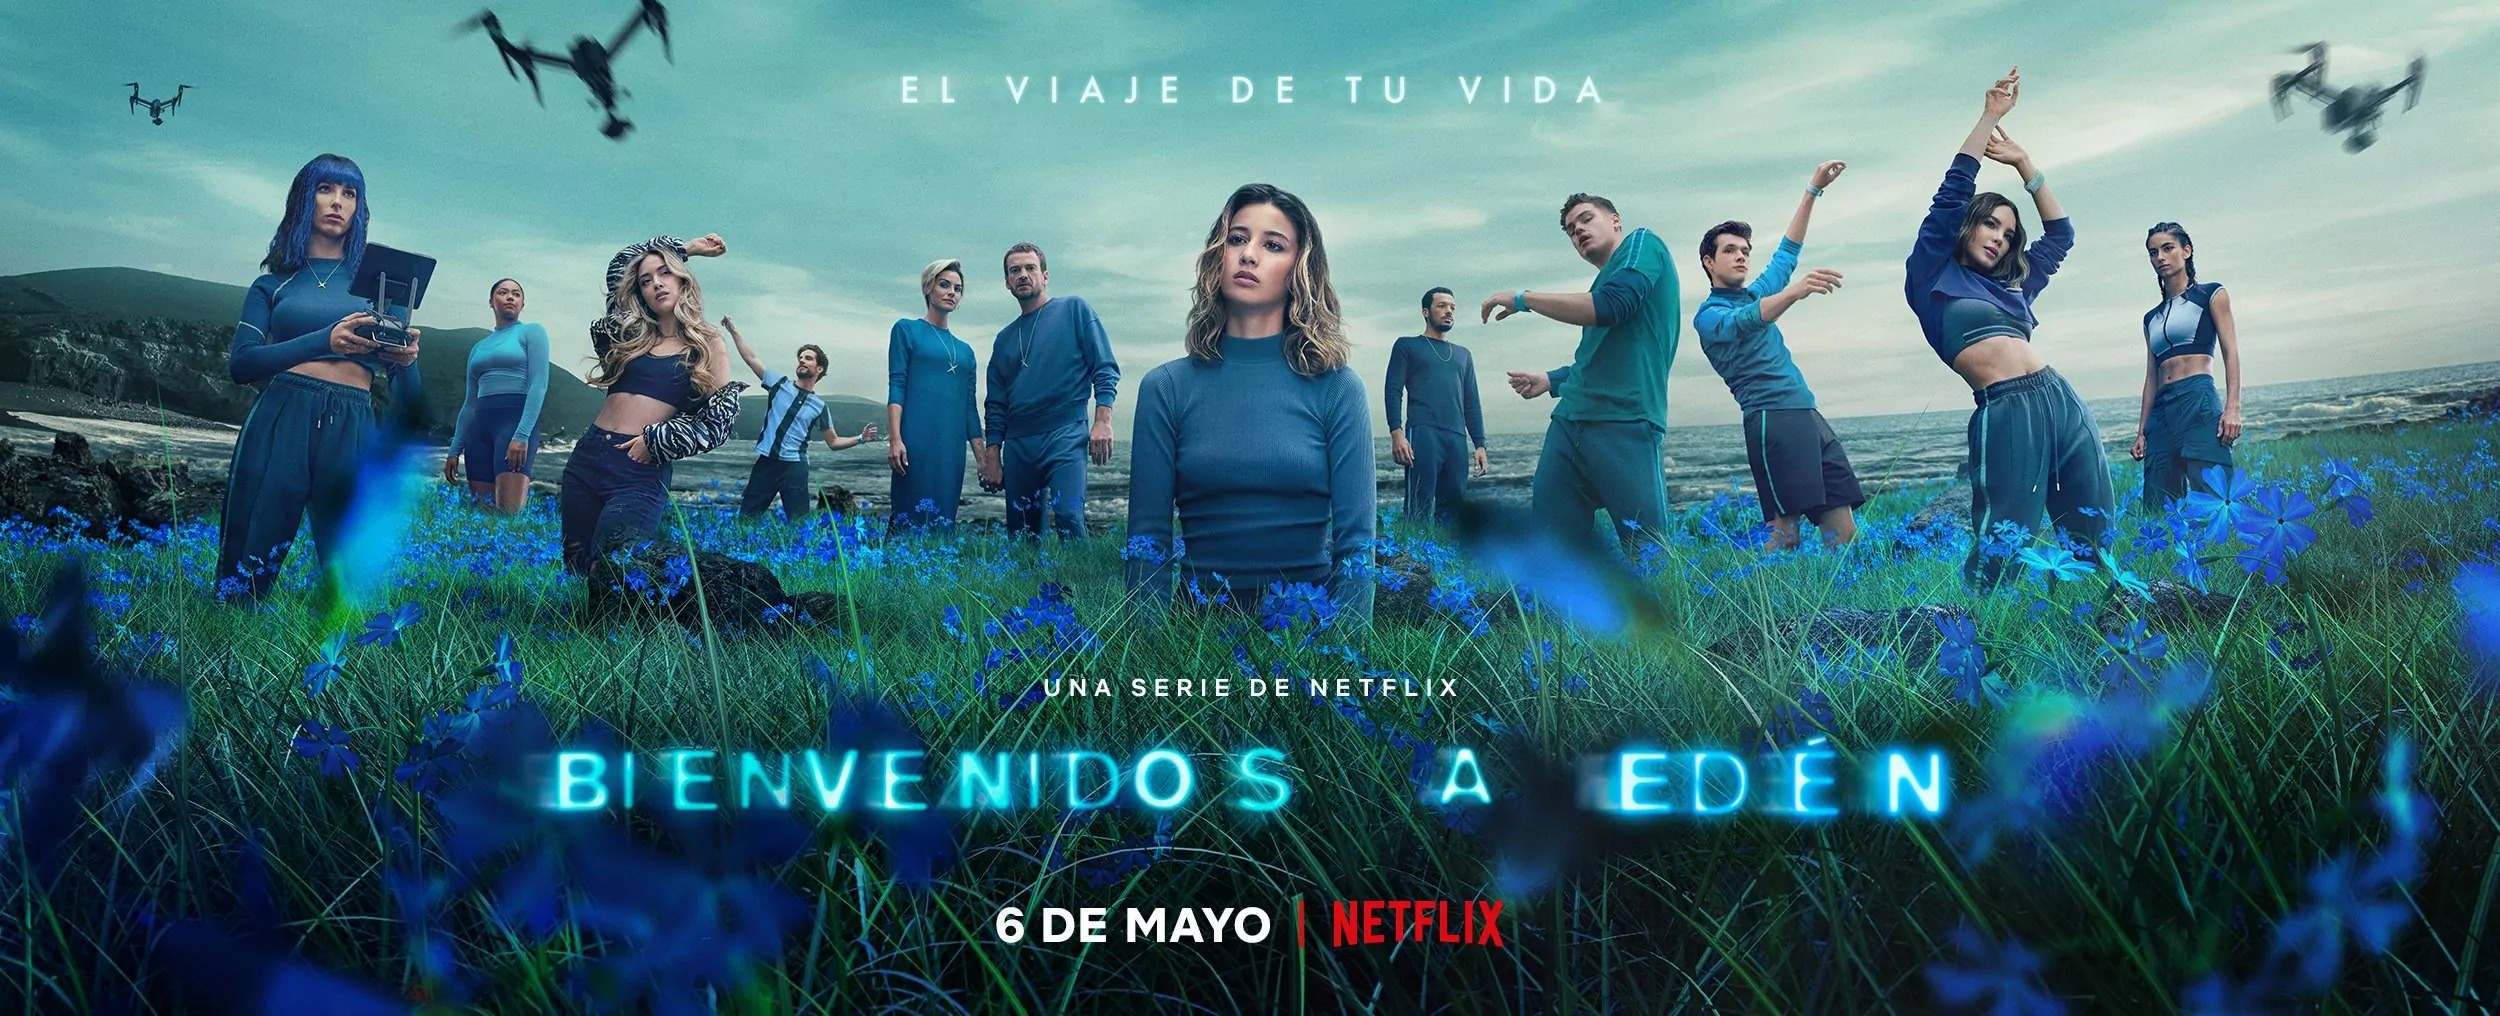 Mega Sized TV Poster Image for Bienvenidos a Edén (#1 of 3)